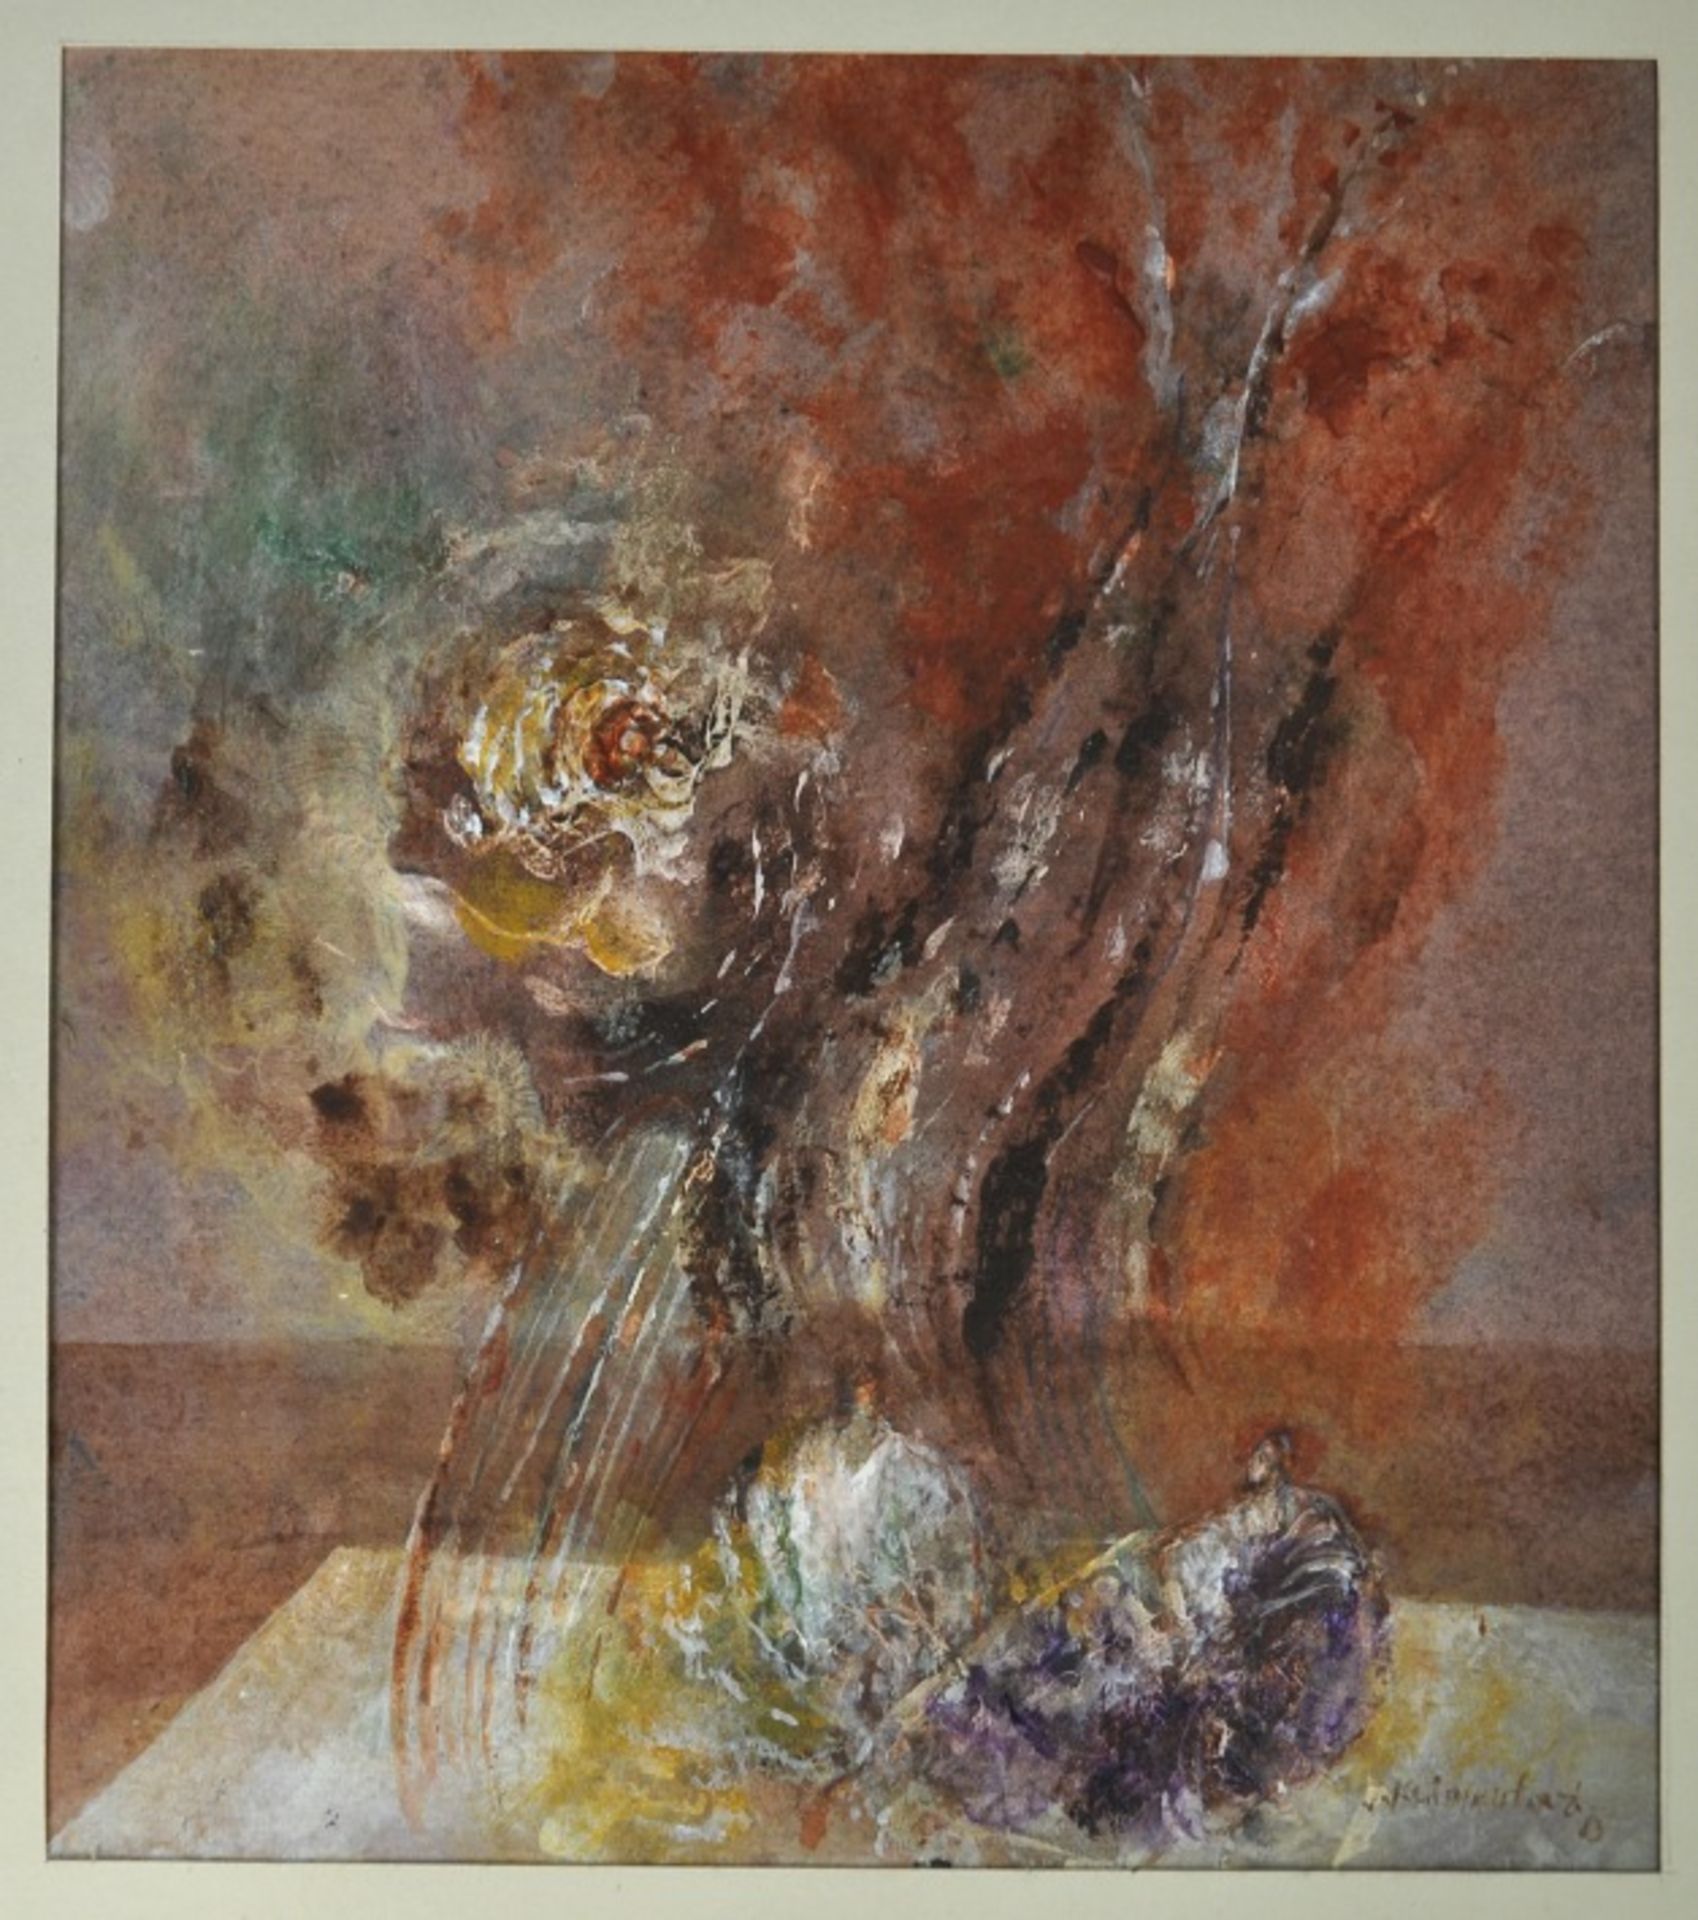 KLIMENTOVA Jirina (tschechisch, 1923-1997) "Abstraktes Stillleben", mit angedeuteten Blumen und